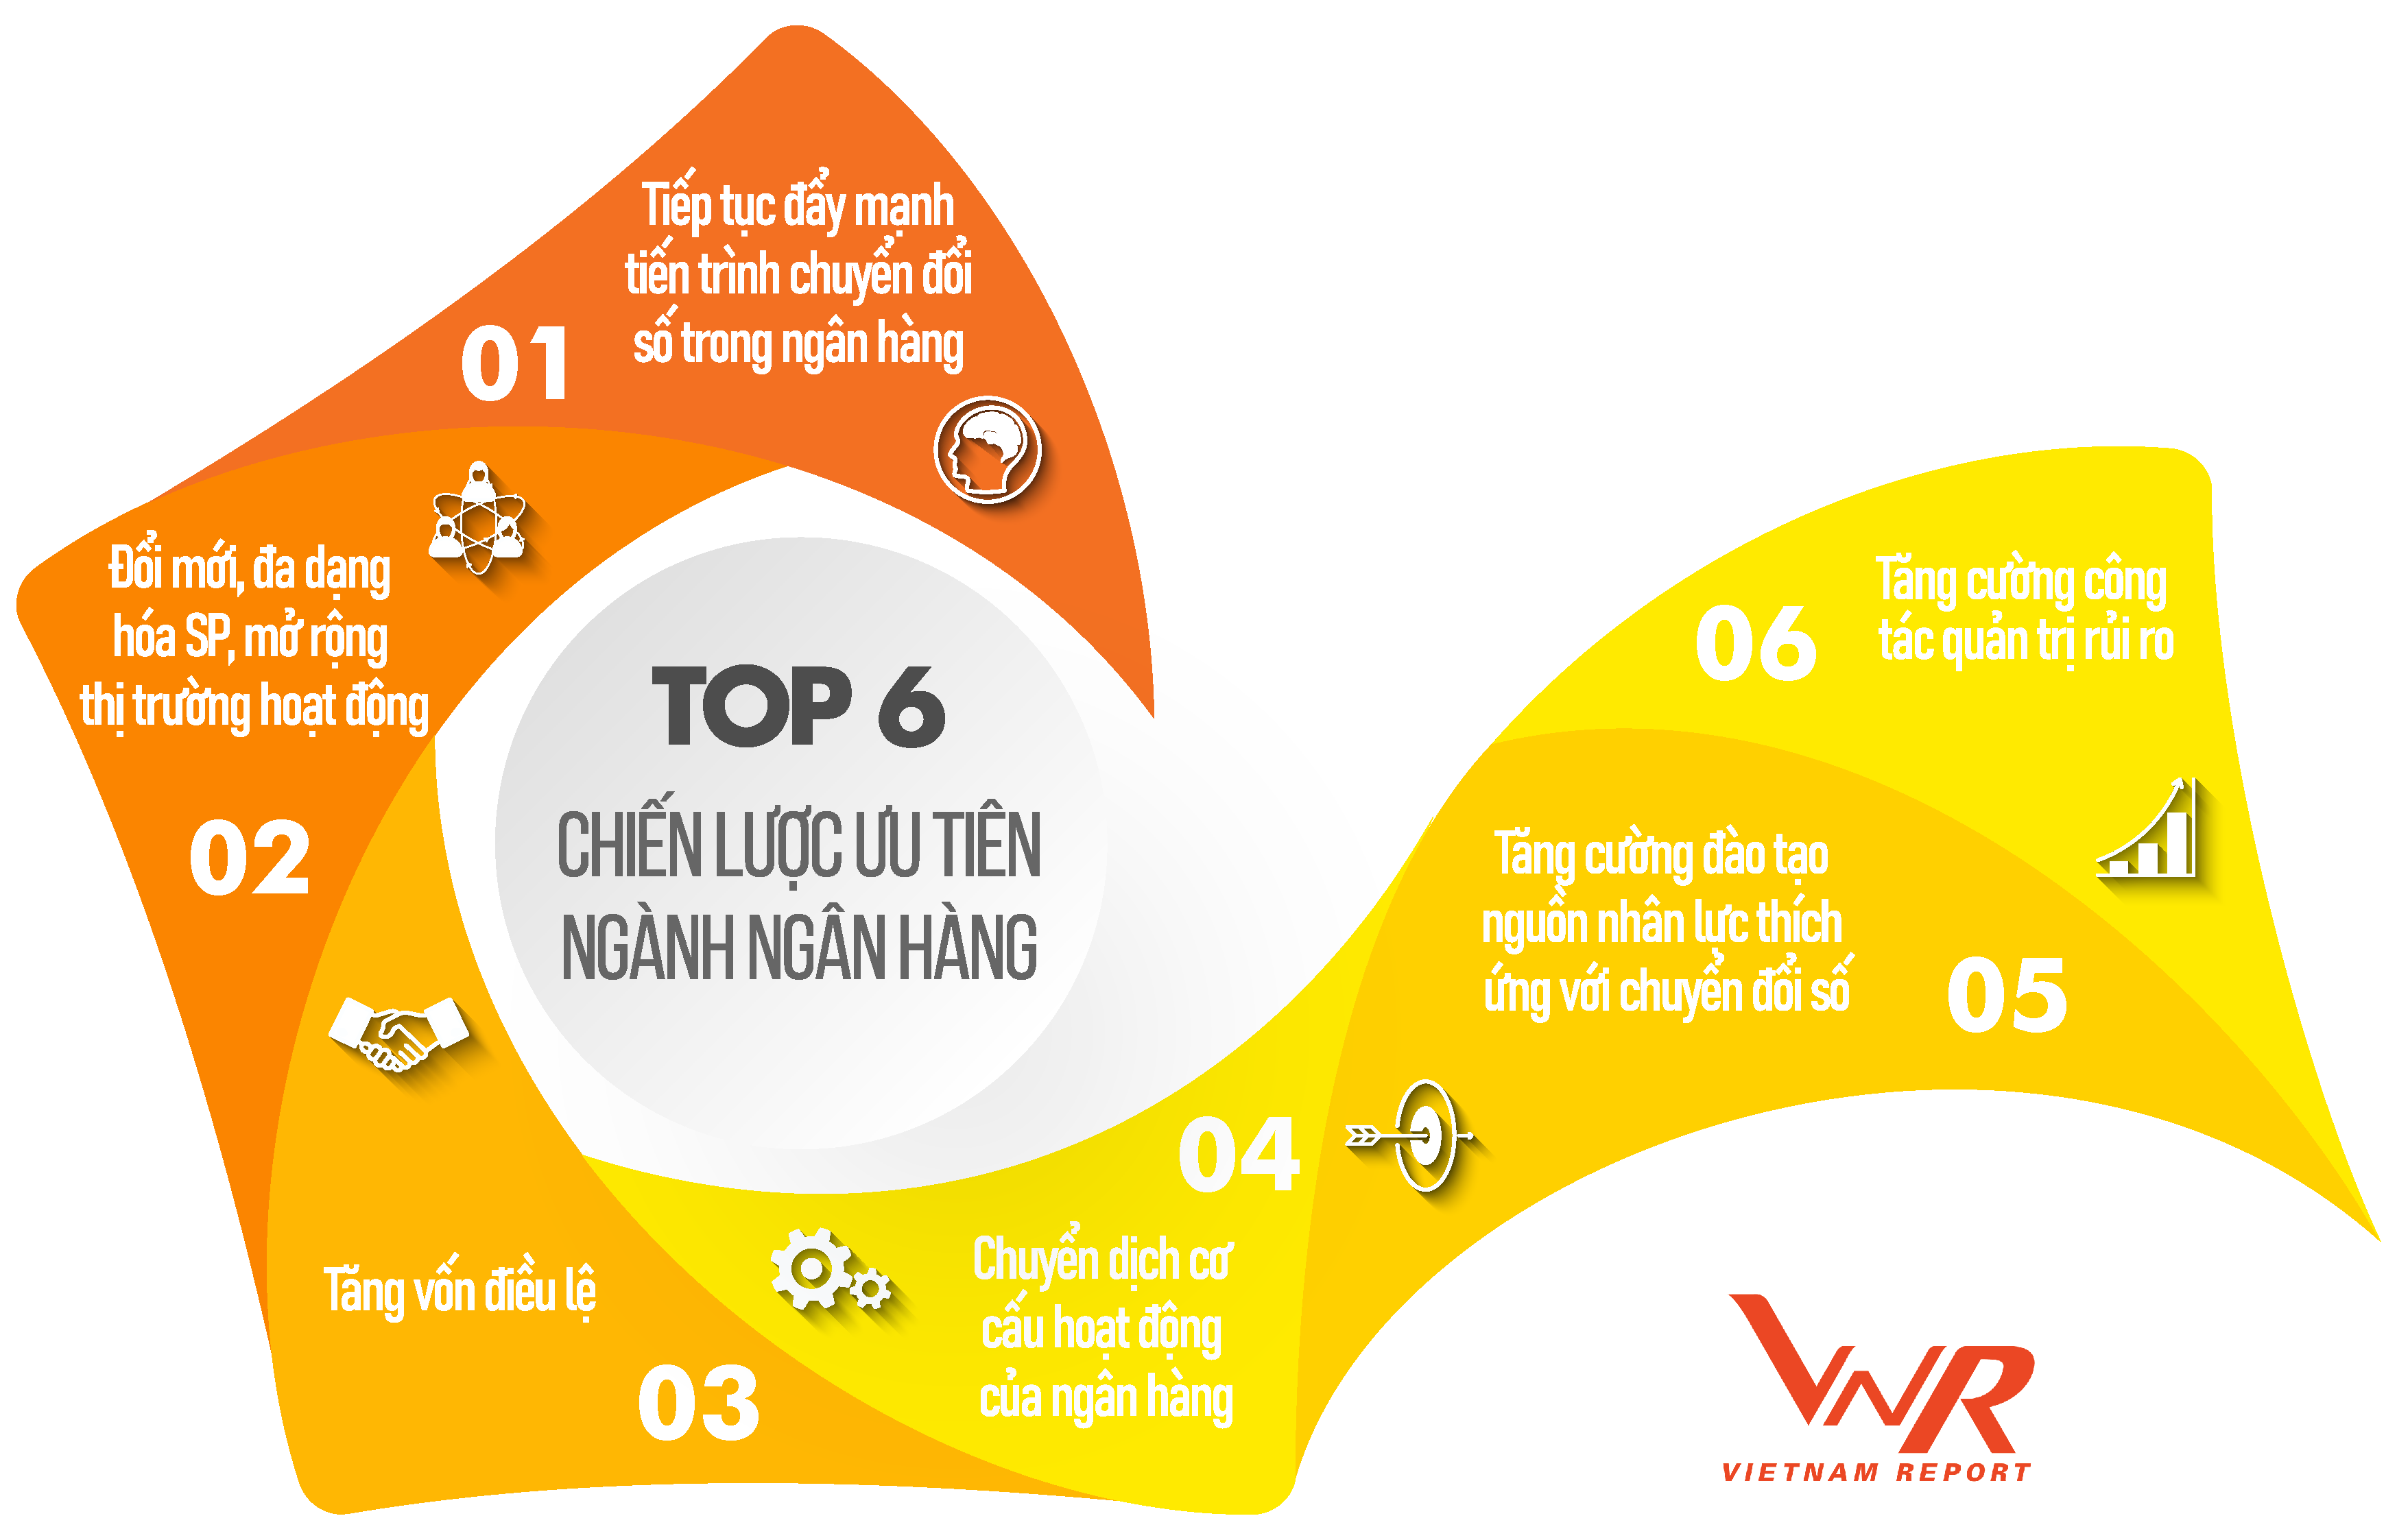 Top 10 Ngân hàng thương mại Việt Nam uy tín năm 2021